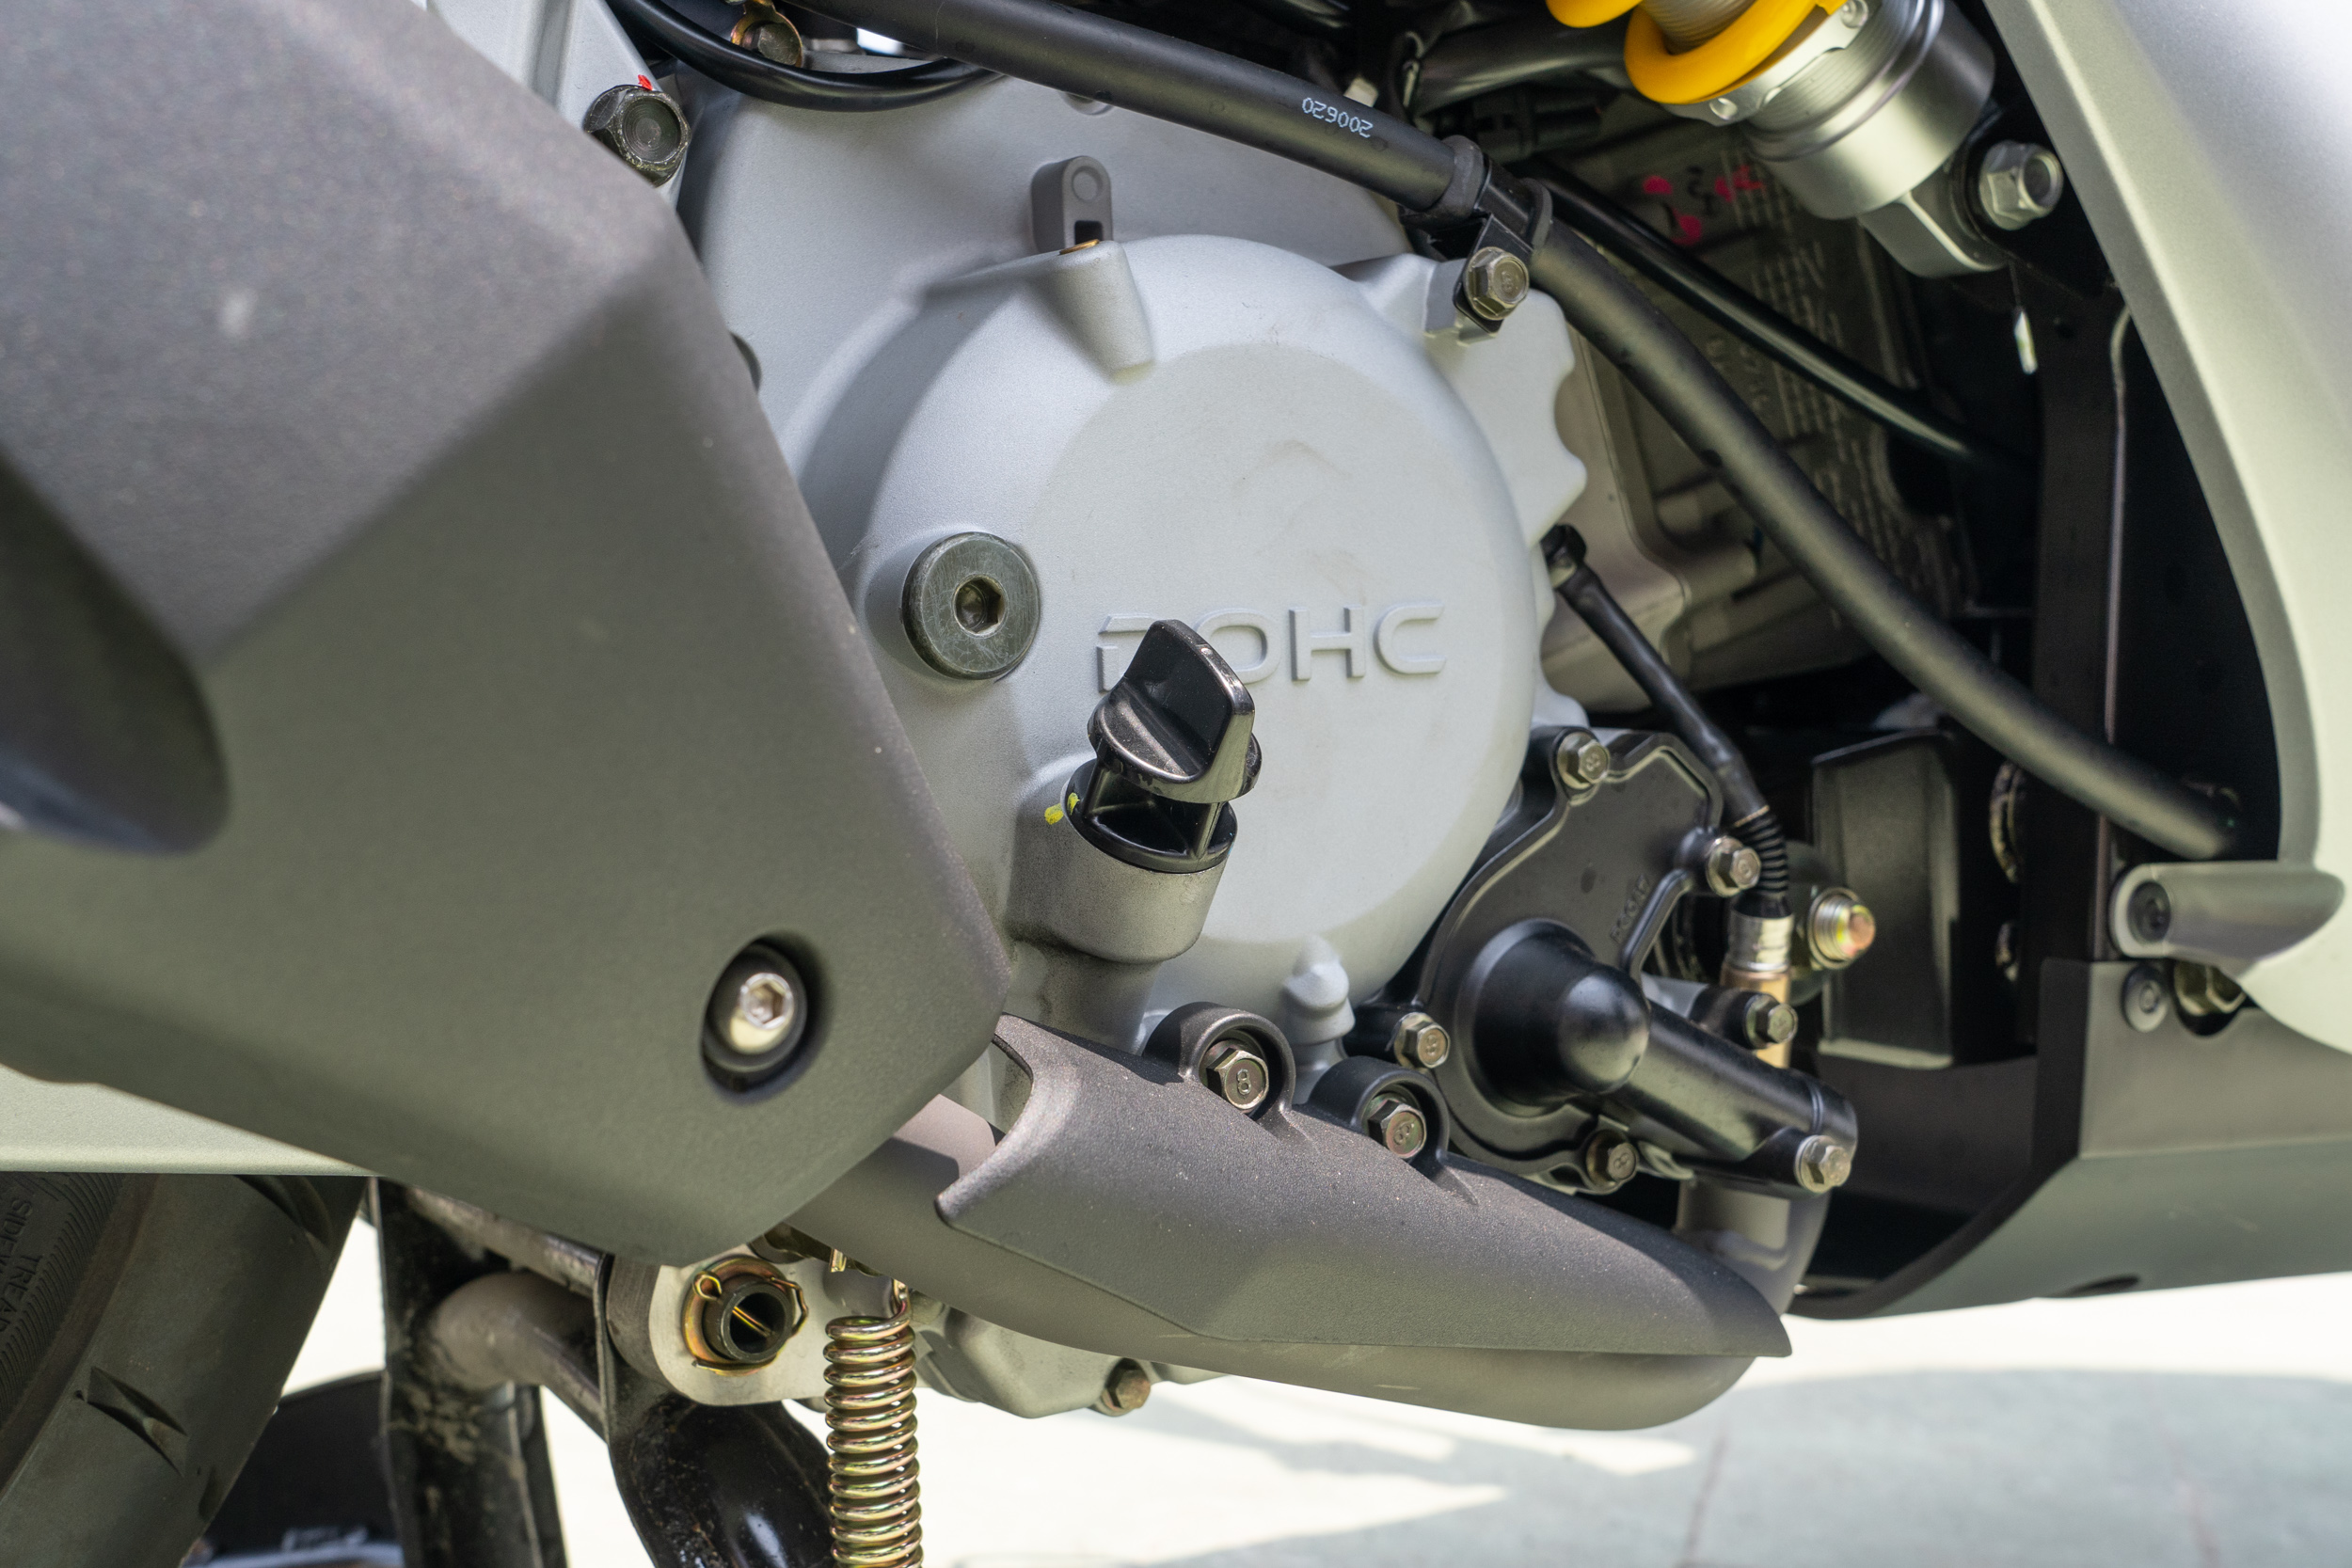 Tigra 250 搭載全新開發的 MASTER 251.3 c.c. 水冷動力引擎，採用德國 BOSCH 6.0 噴射系統並搭載 DOHC 雙頂置凸輪軸系統與曲軸平衡軸。